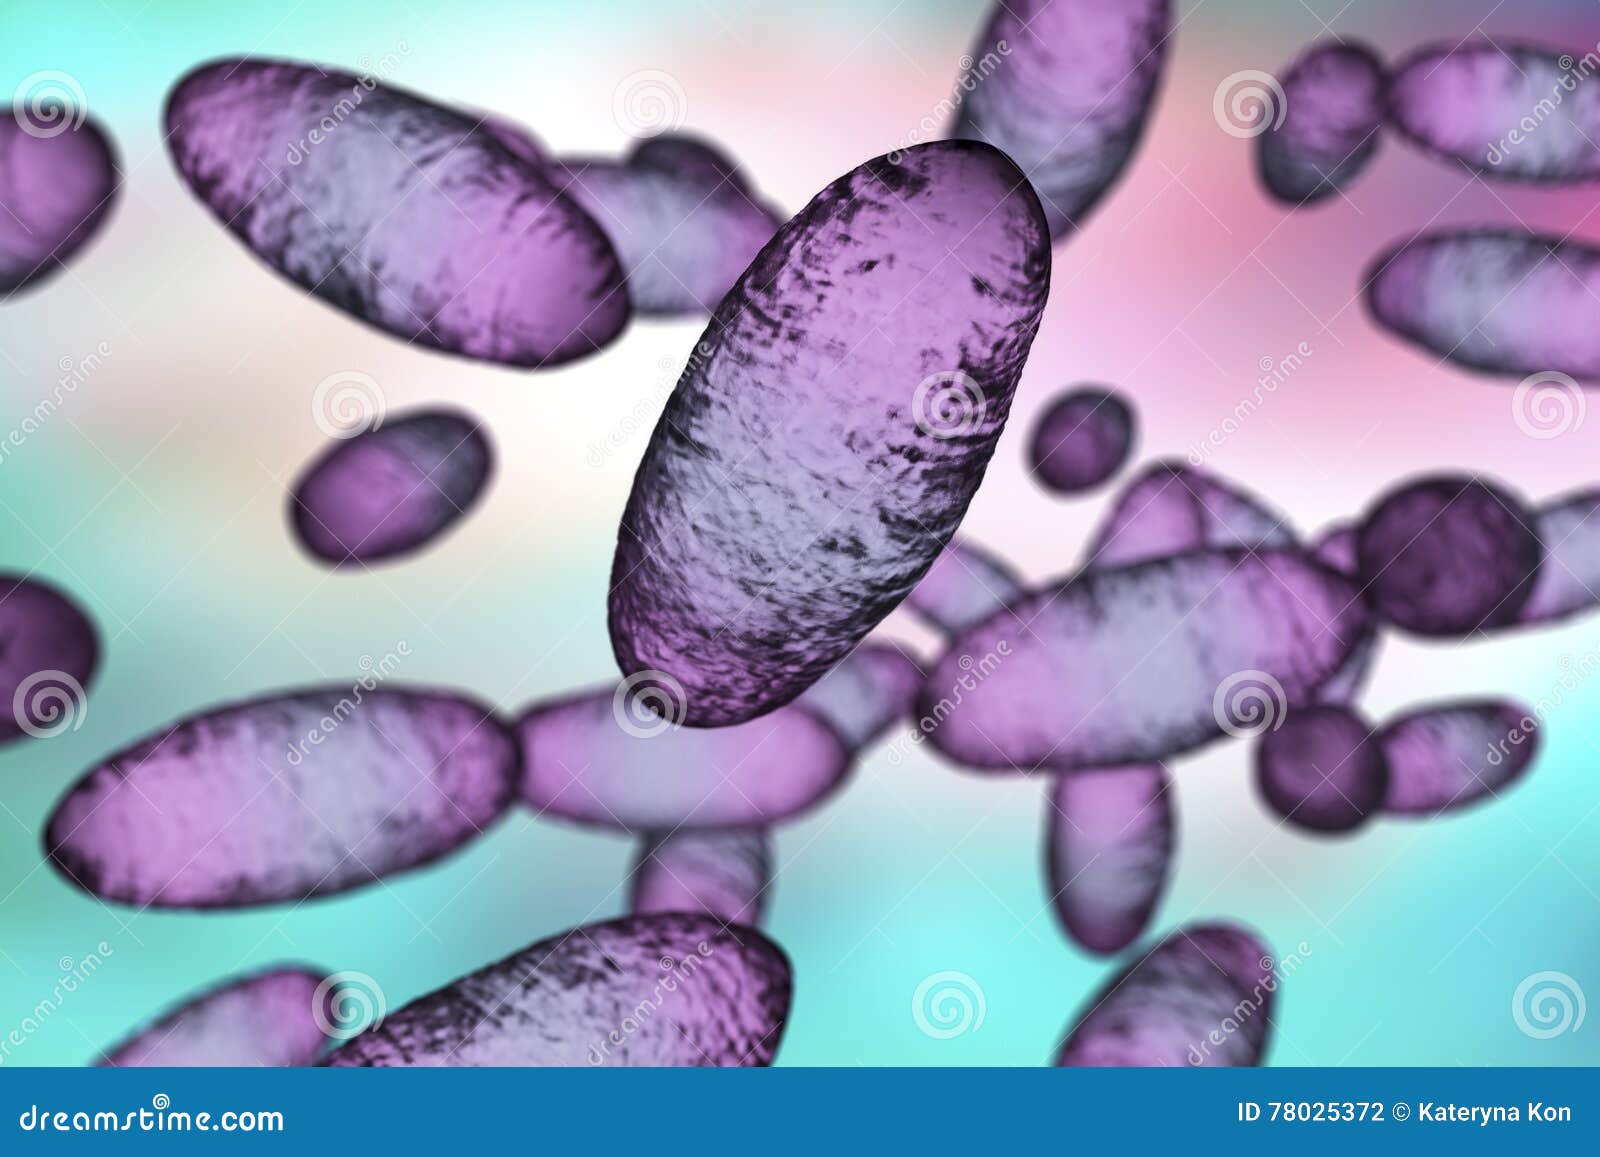 bubonic plague bacteria yersinia pestis